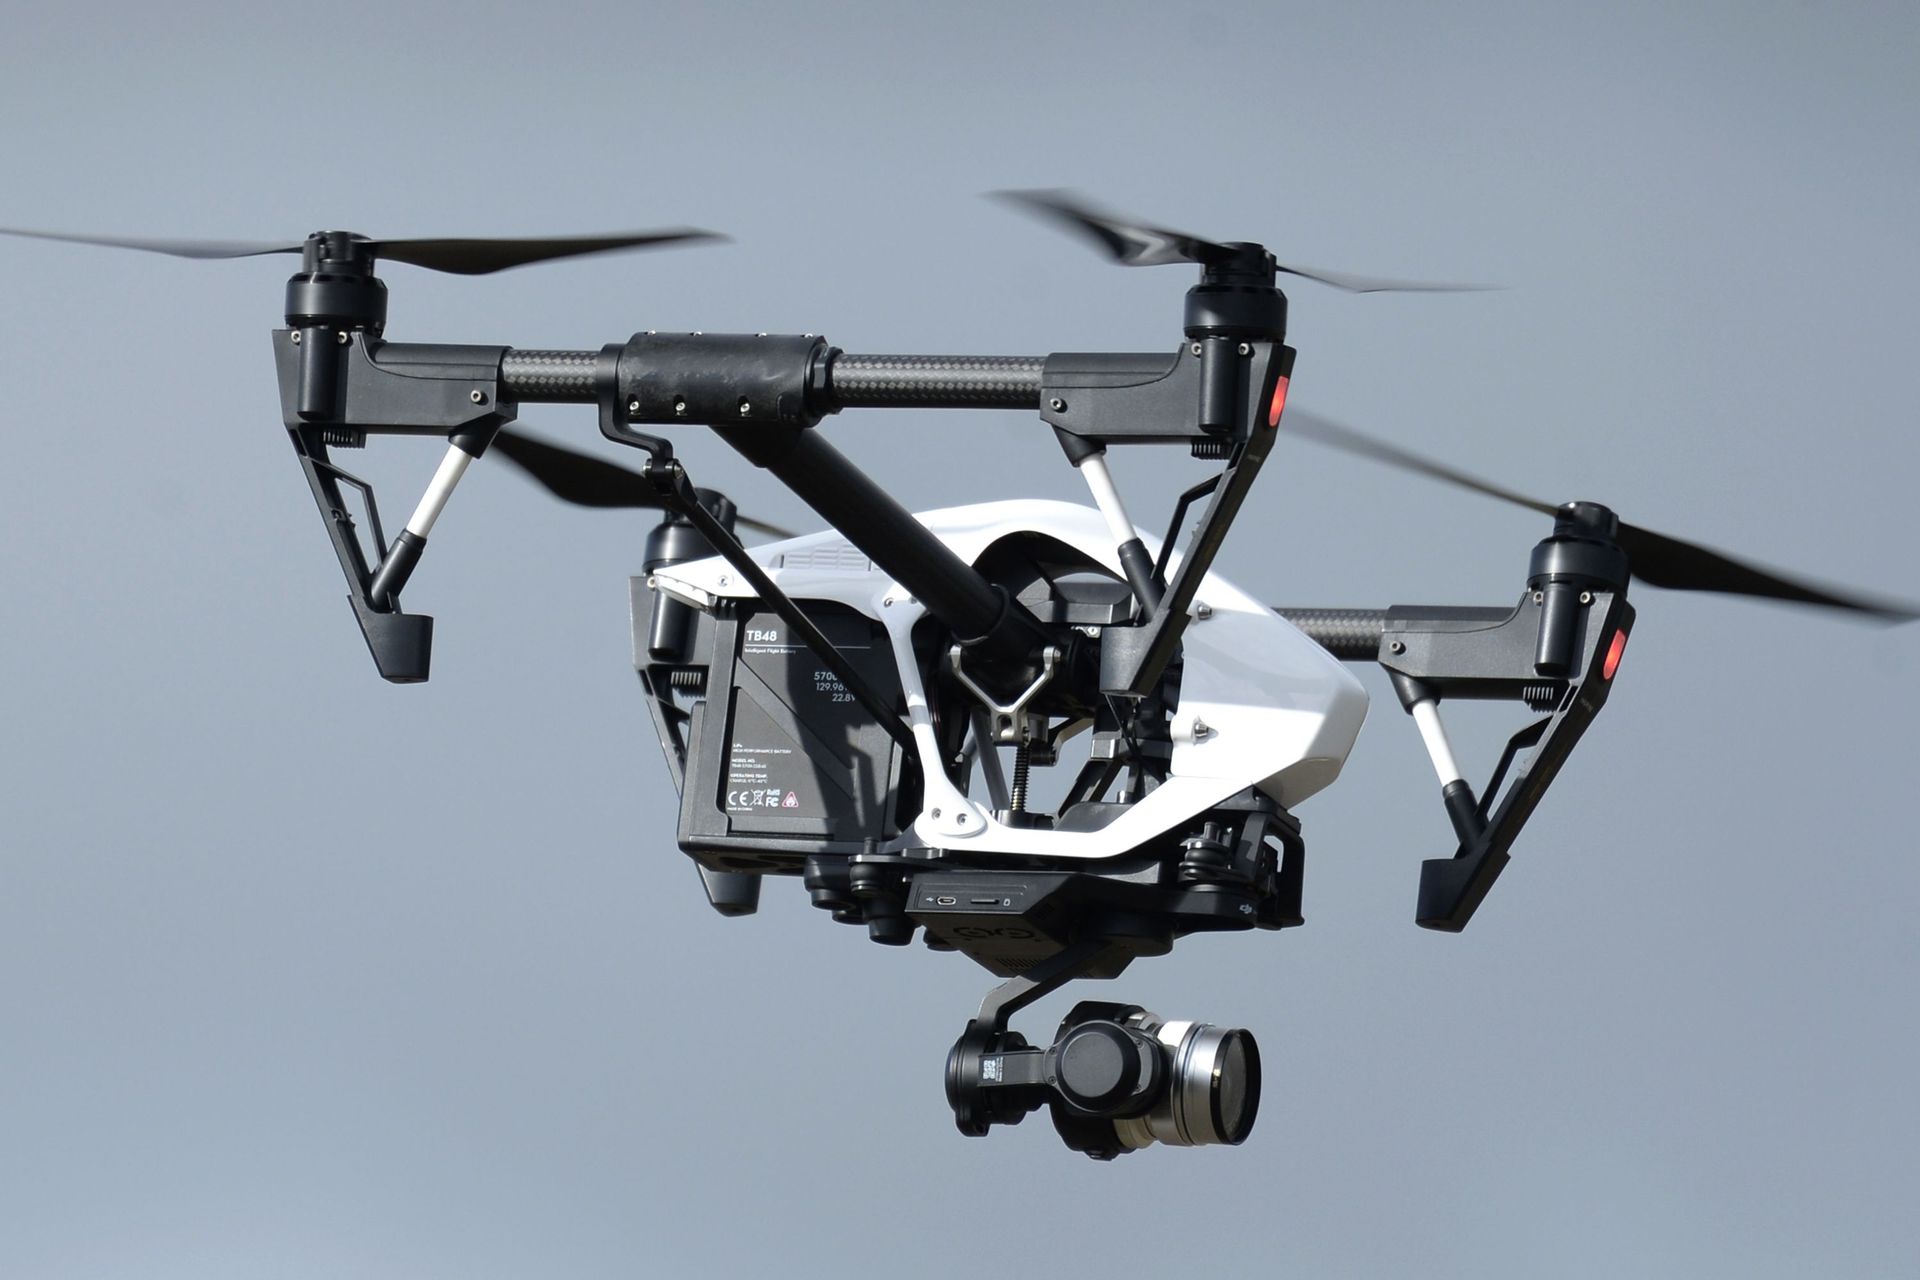 679 drones de classe 1 enregistrés en Belgique et 162 pilotes en ordre ...